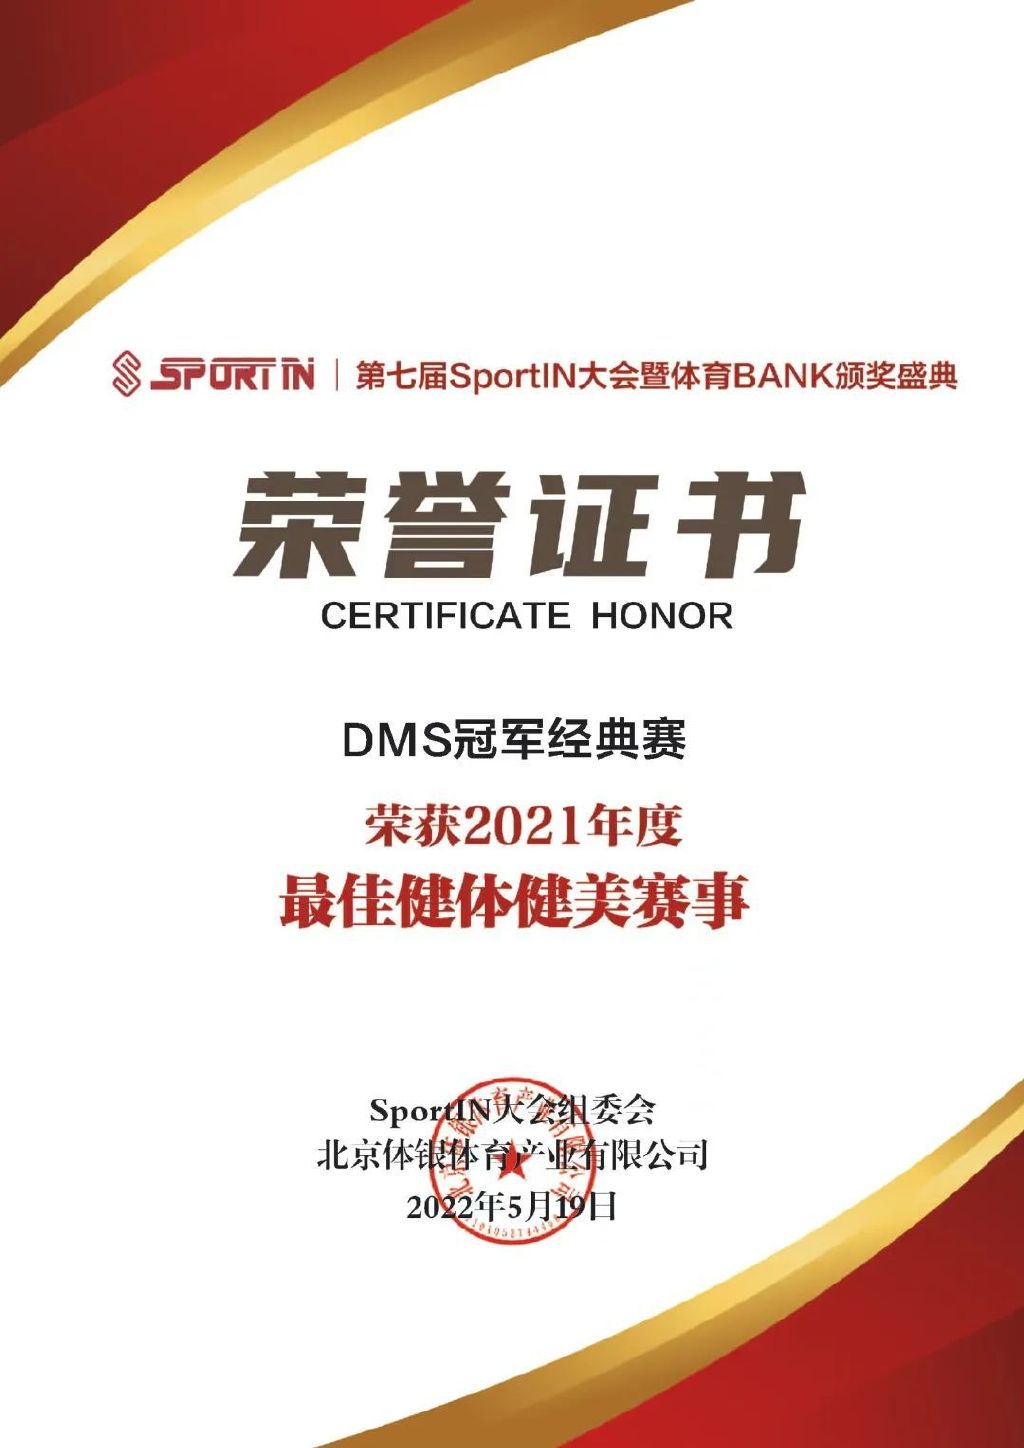 重磅！DMS冠军经典赛荣获“中国最佳健体健美赛